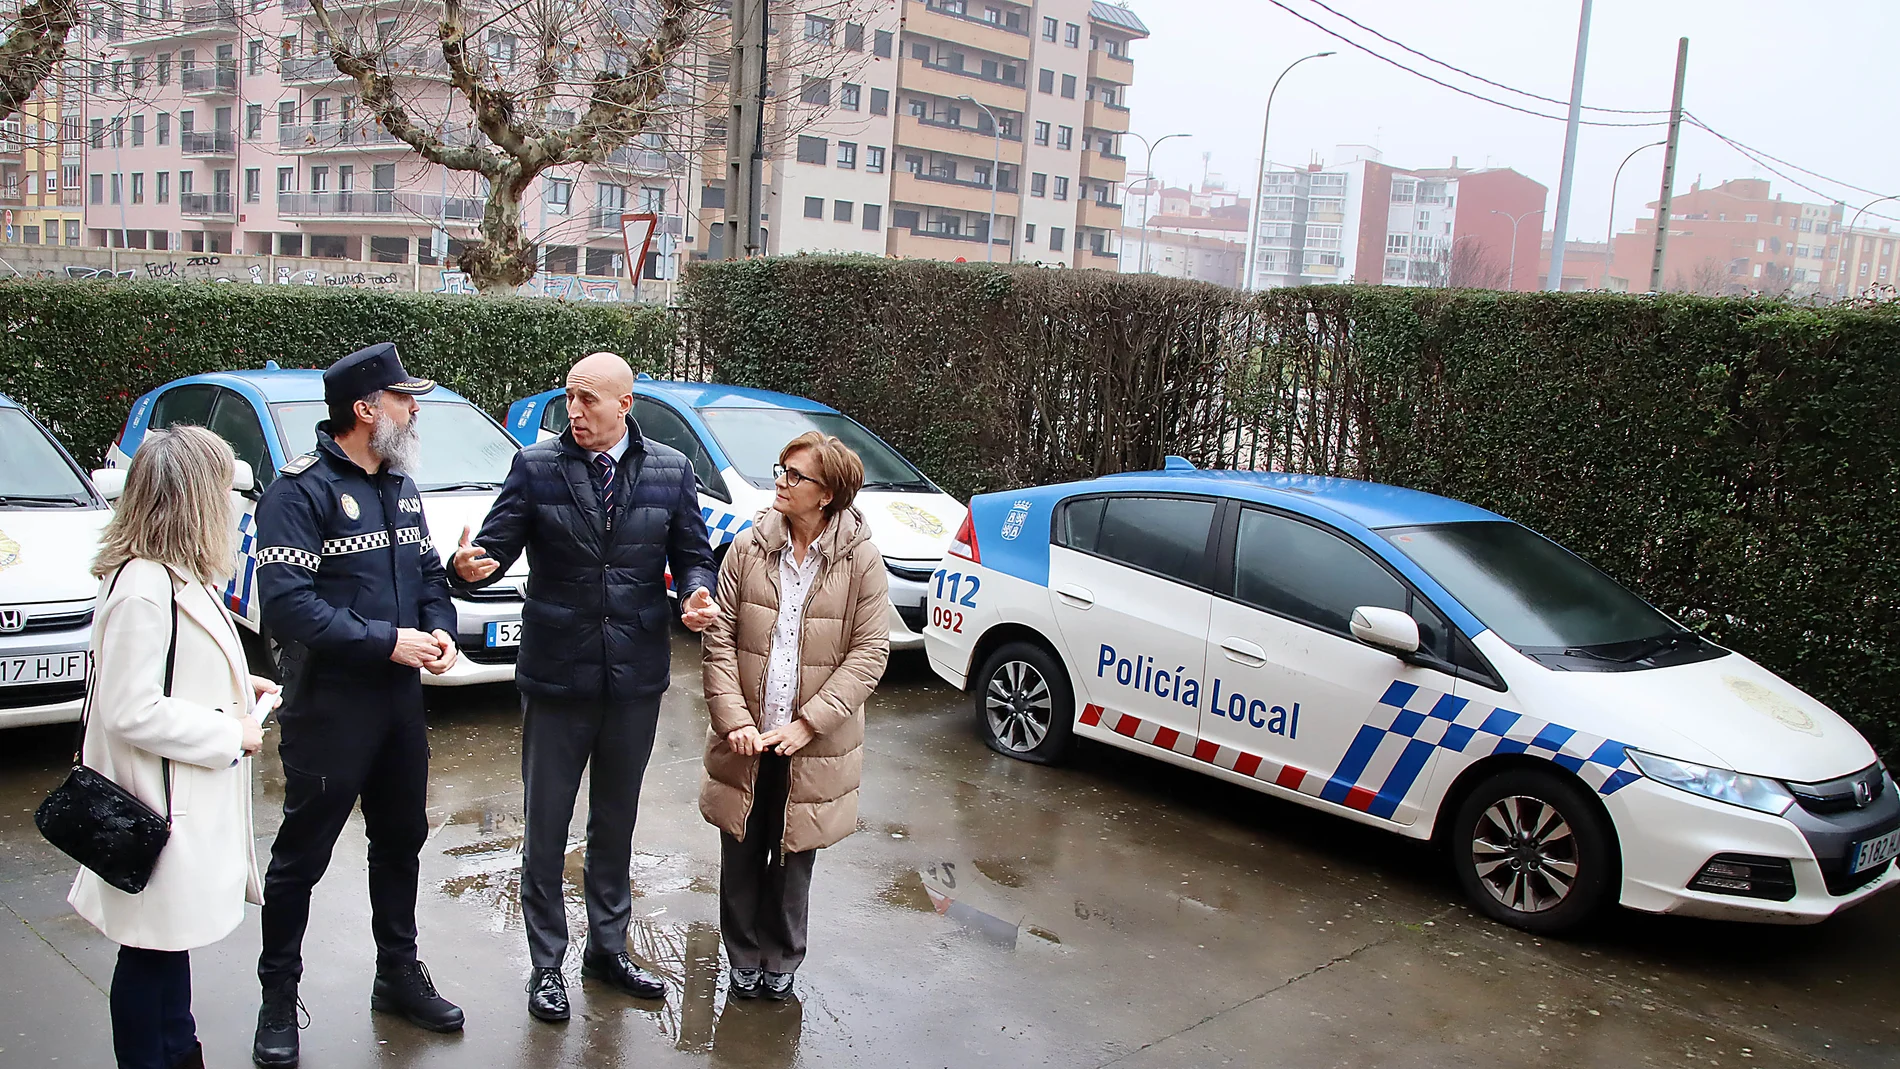 El alcalde de León, José Antonio Diez, participa en la entrega de vehículos policiales en desuso al IES Giner de los Ríos, donde ha realizado las declaraciones